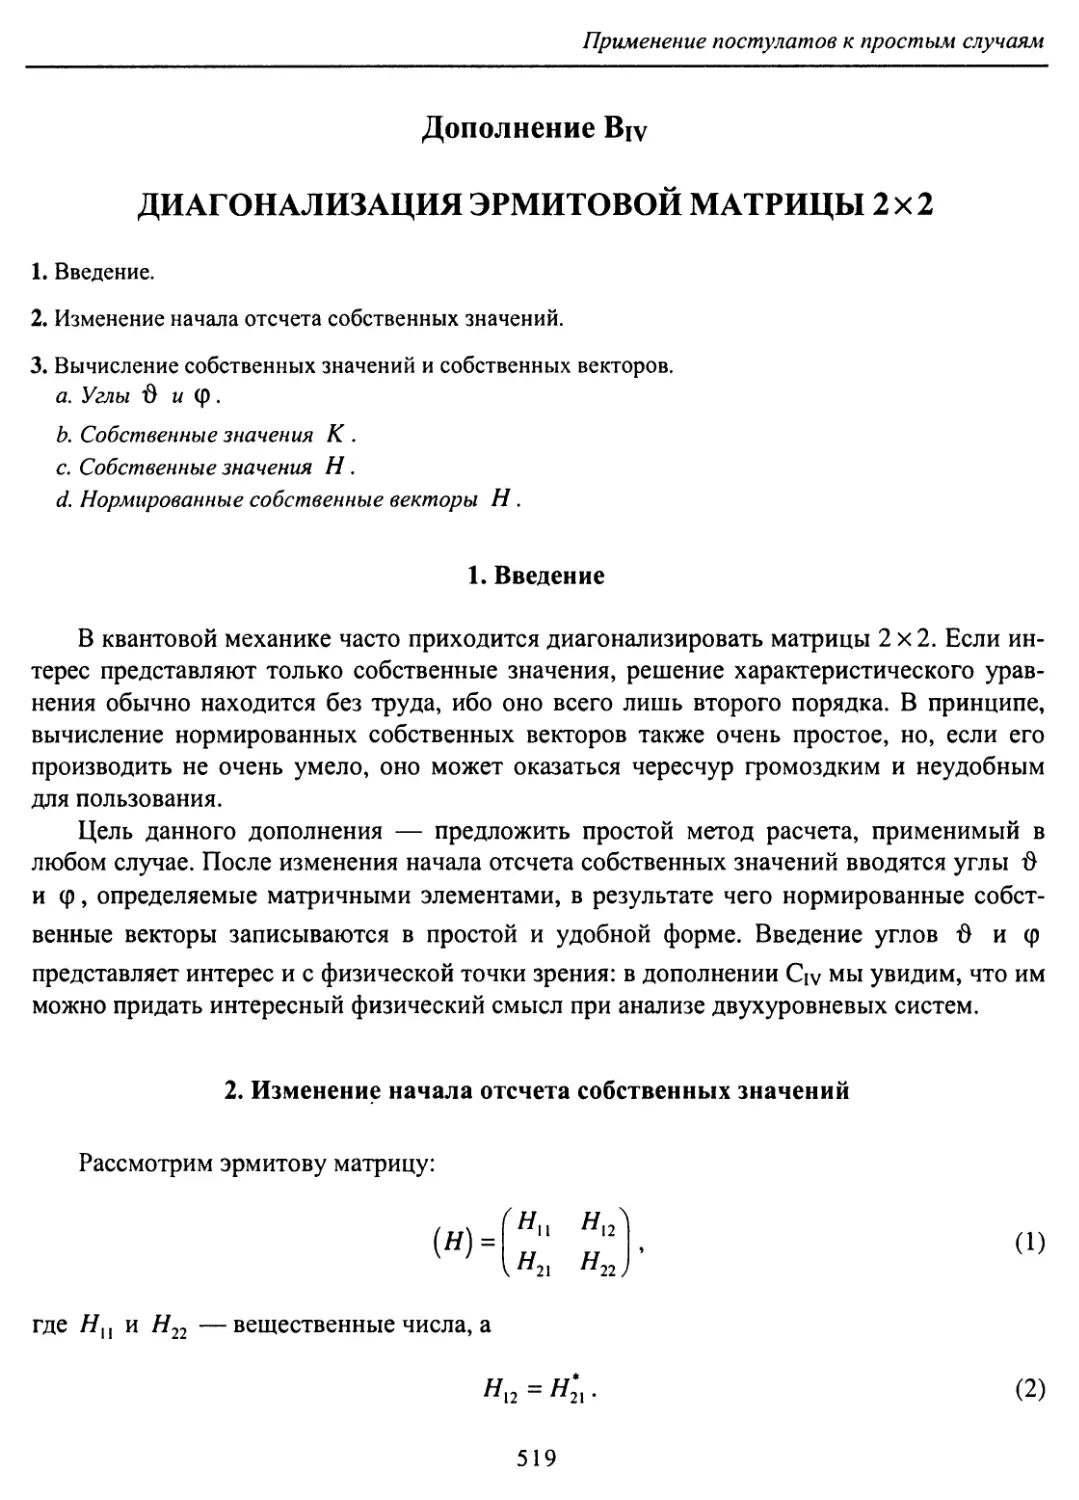 B. Диагонализация эрмитовой матрицы 2x2